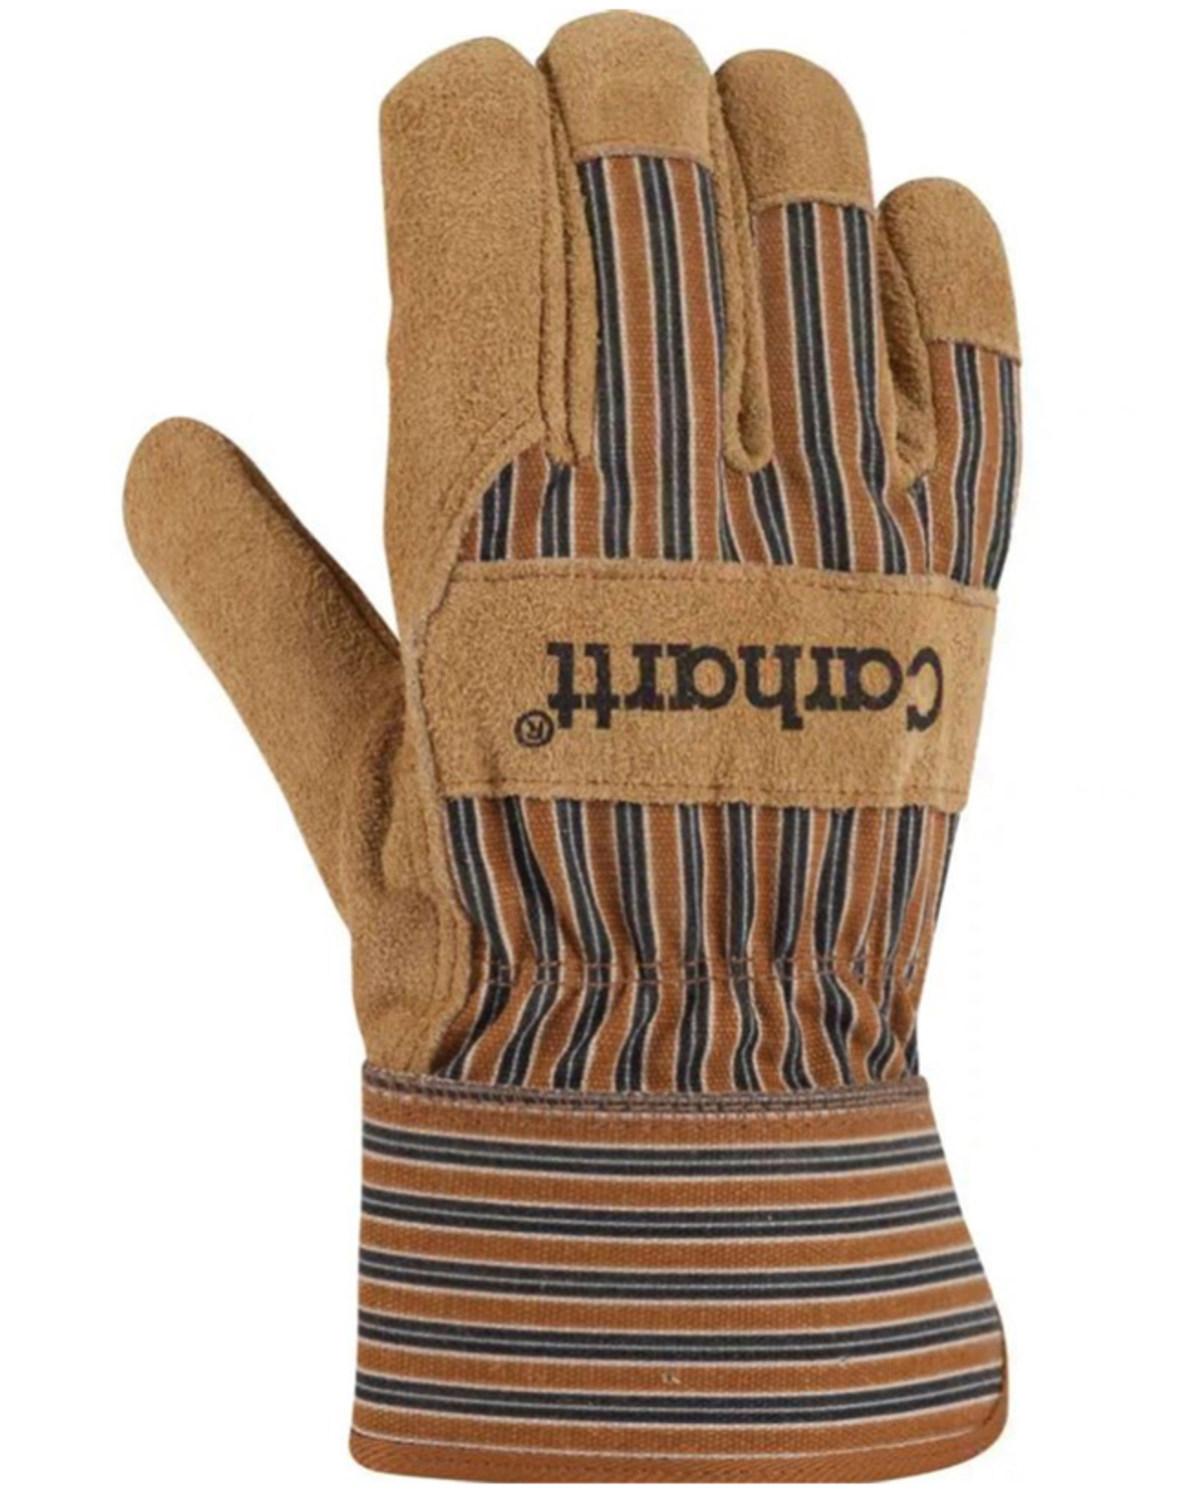 Carhart Men's Insulated Suede Safety Cuff Work Gloves